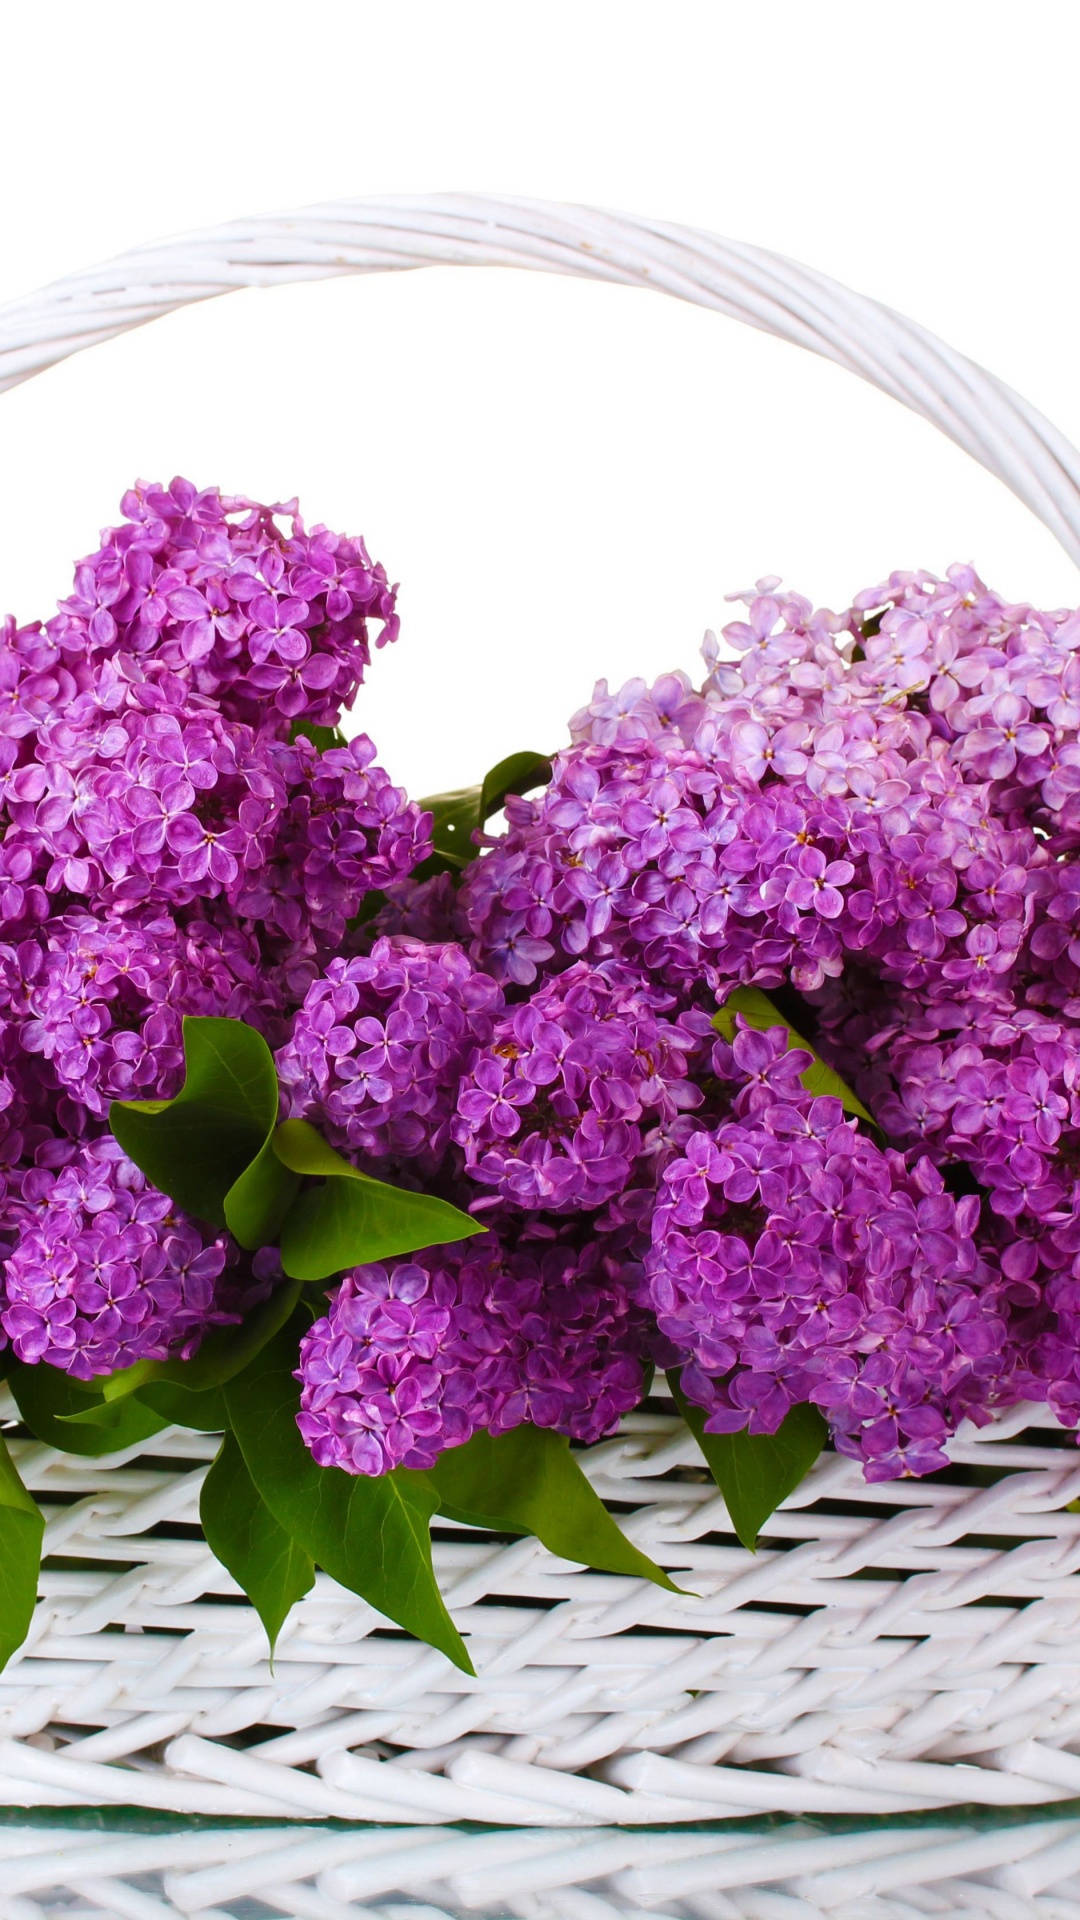 Purple Flowers on Woven Basket. Wallpaper in 1080x1920 Resolution